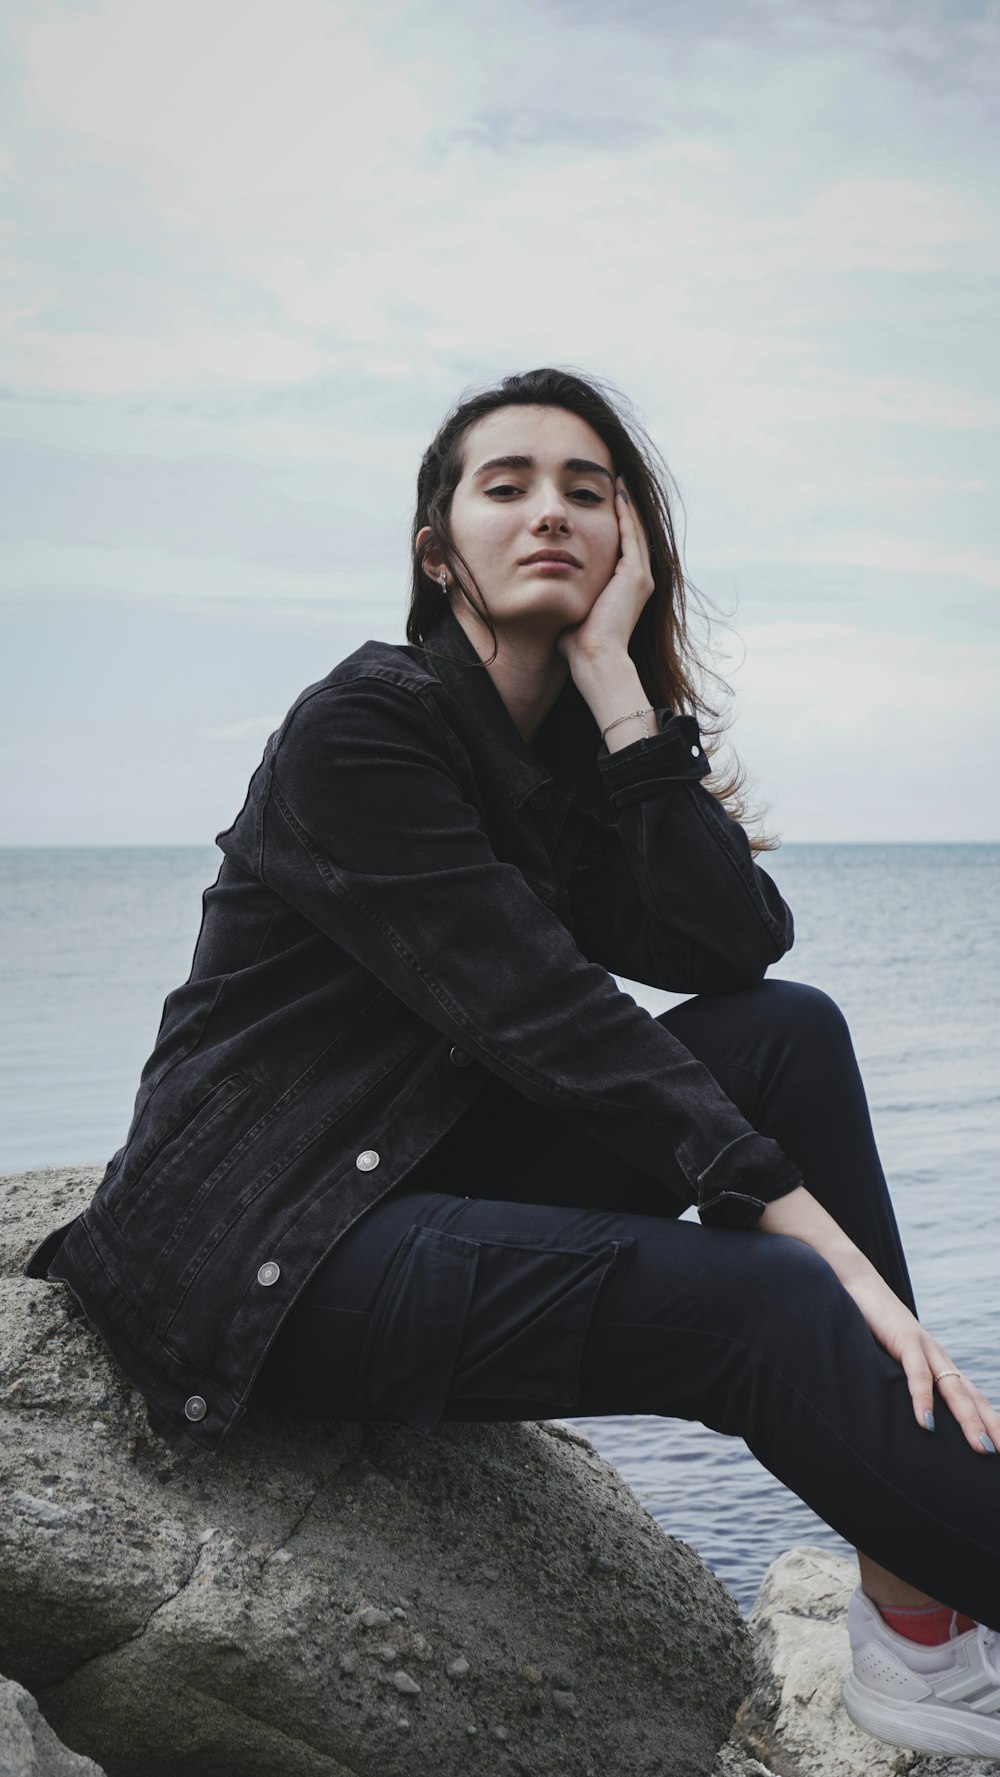 Frau im schwarzen Mantel sitzt tagsüber auf Felsen in der Nähe des Meeres